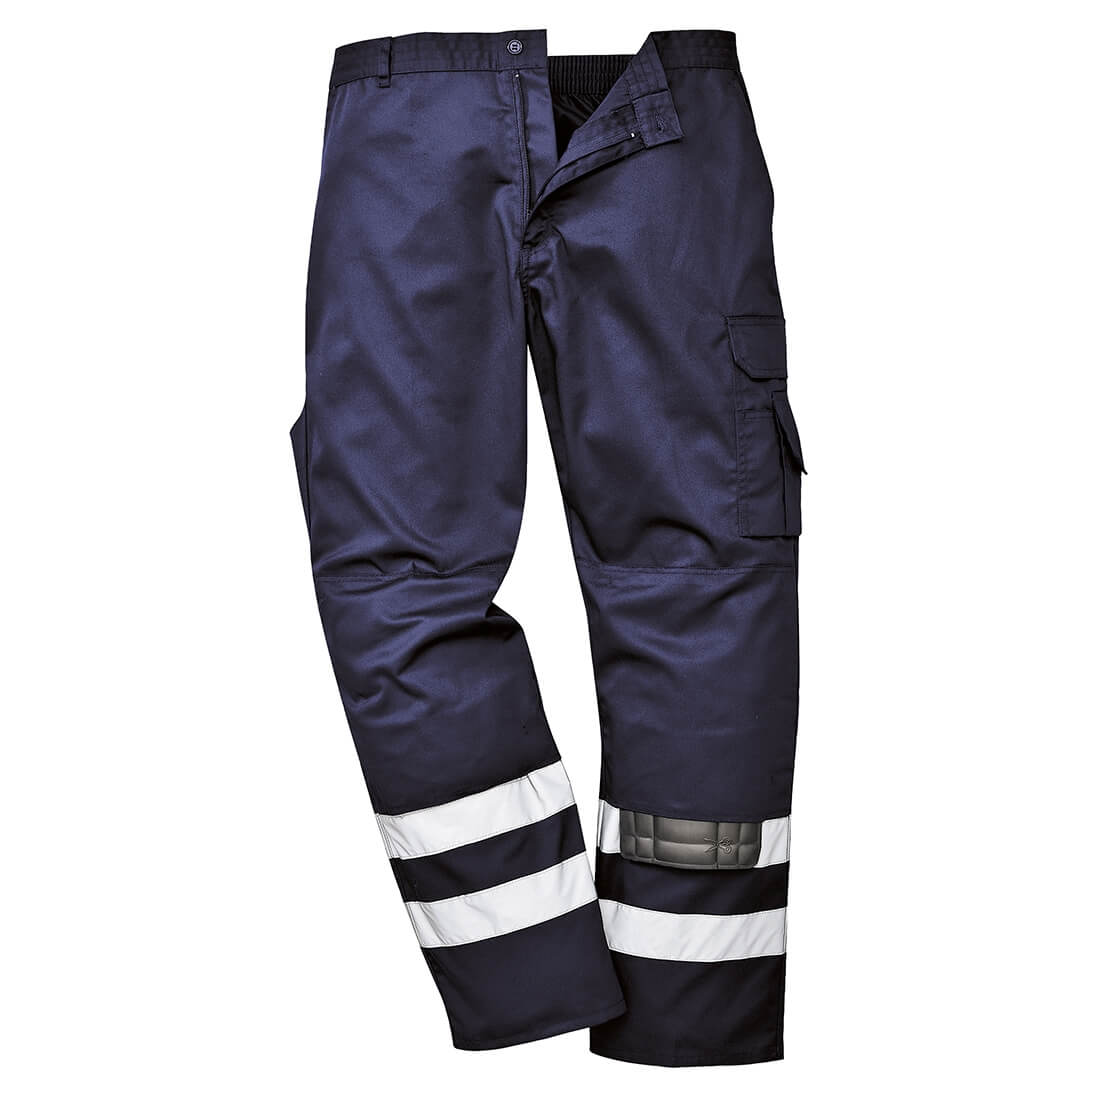 Pantalon Iona de sécurité - Les vêtements de protection